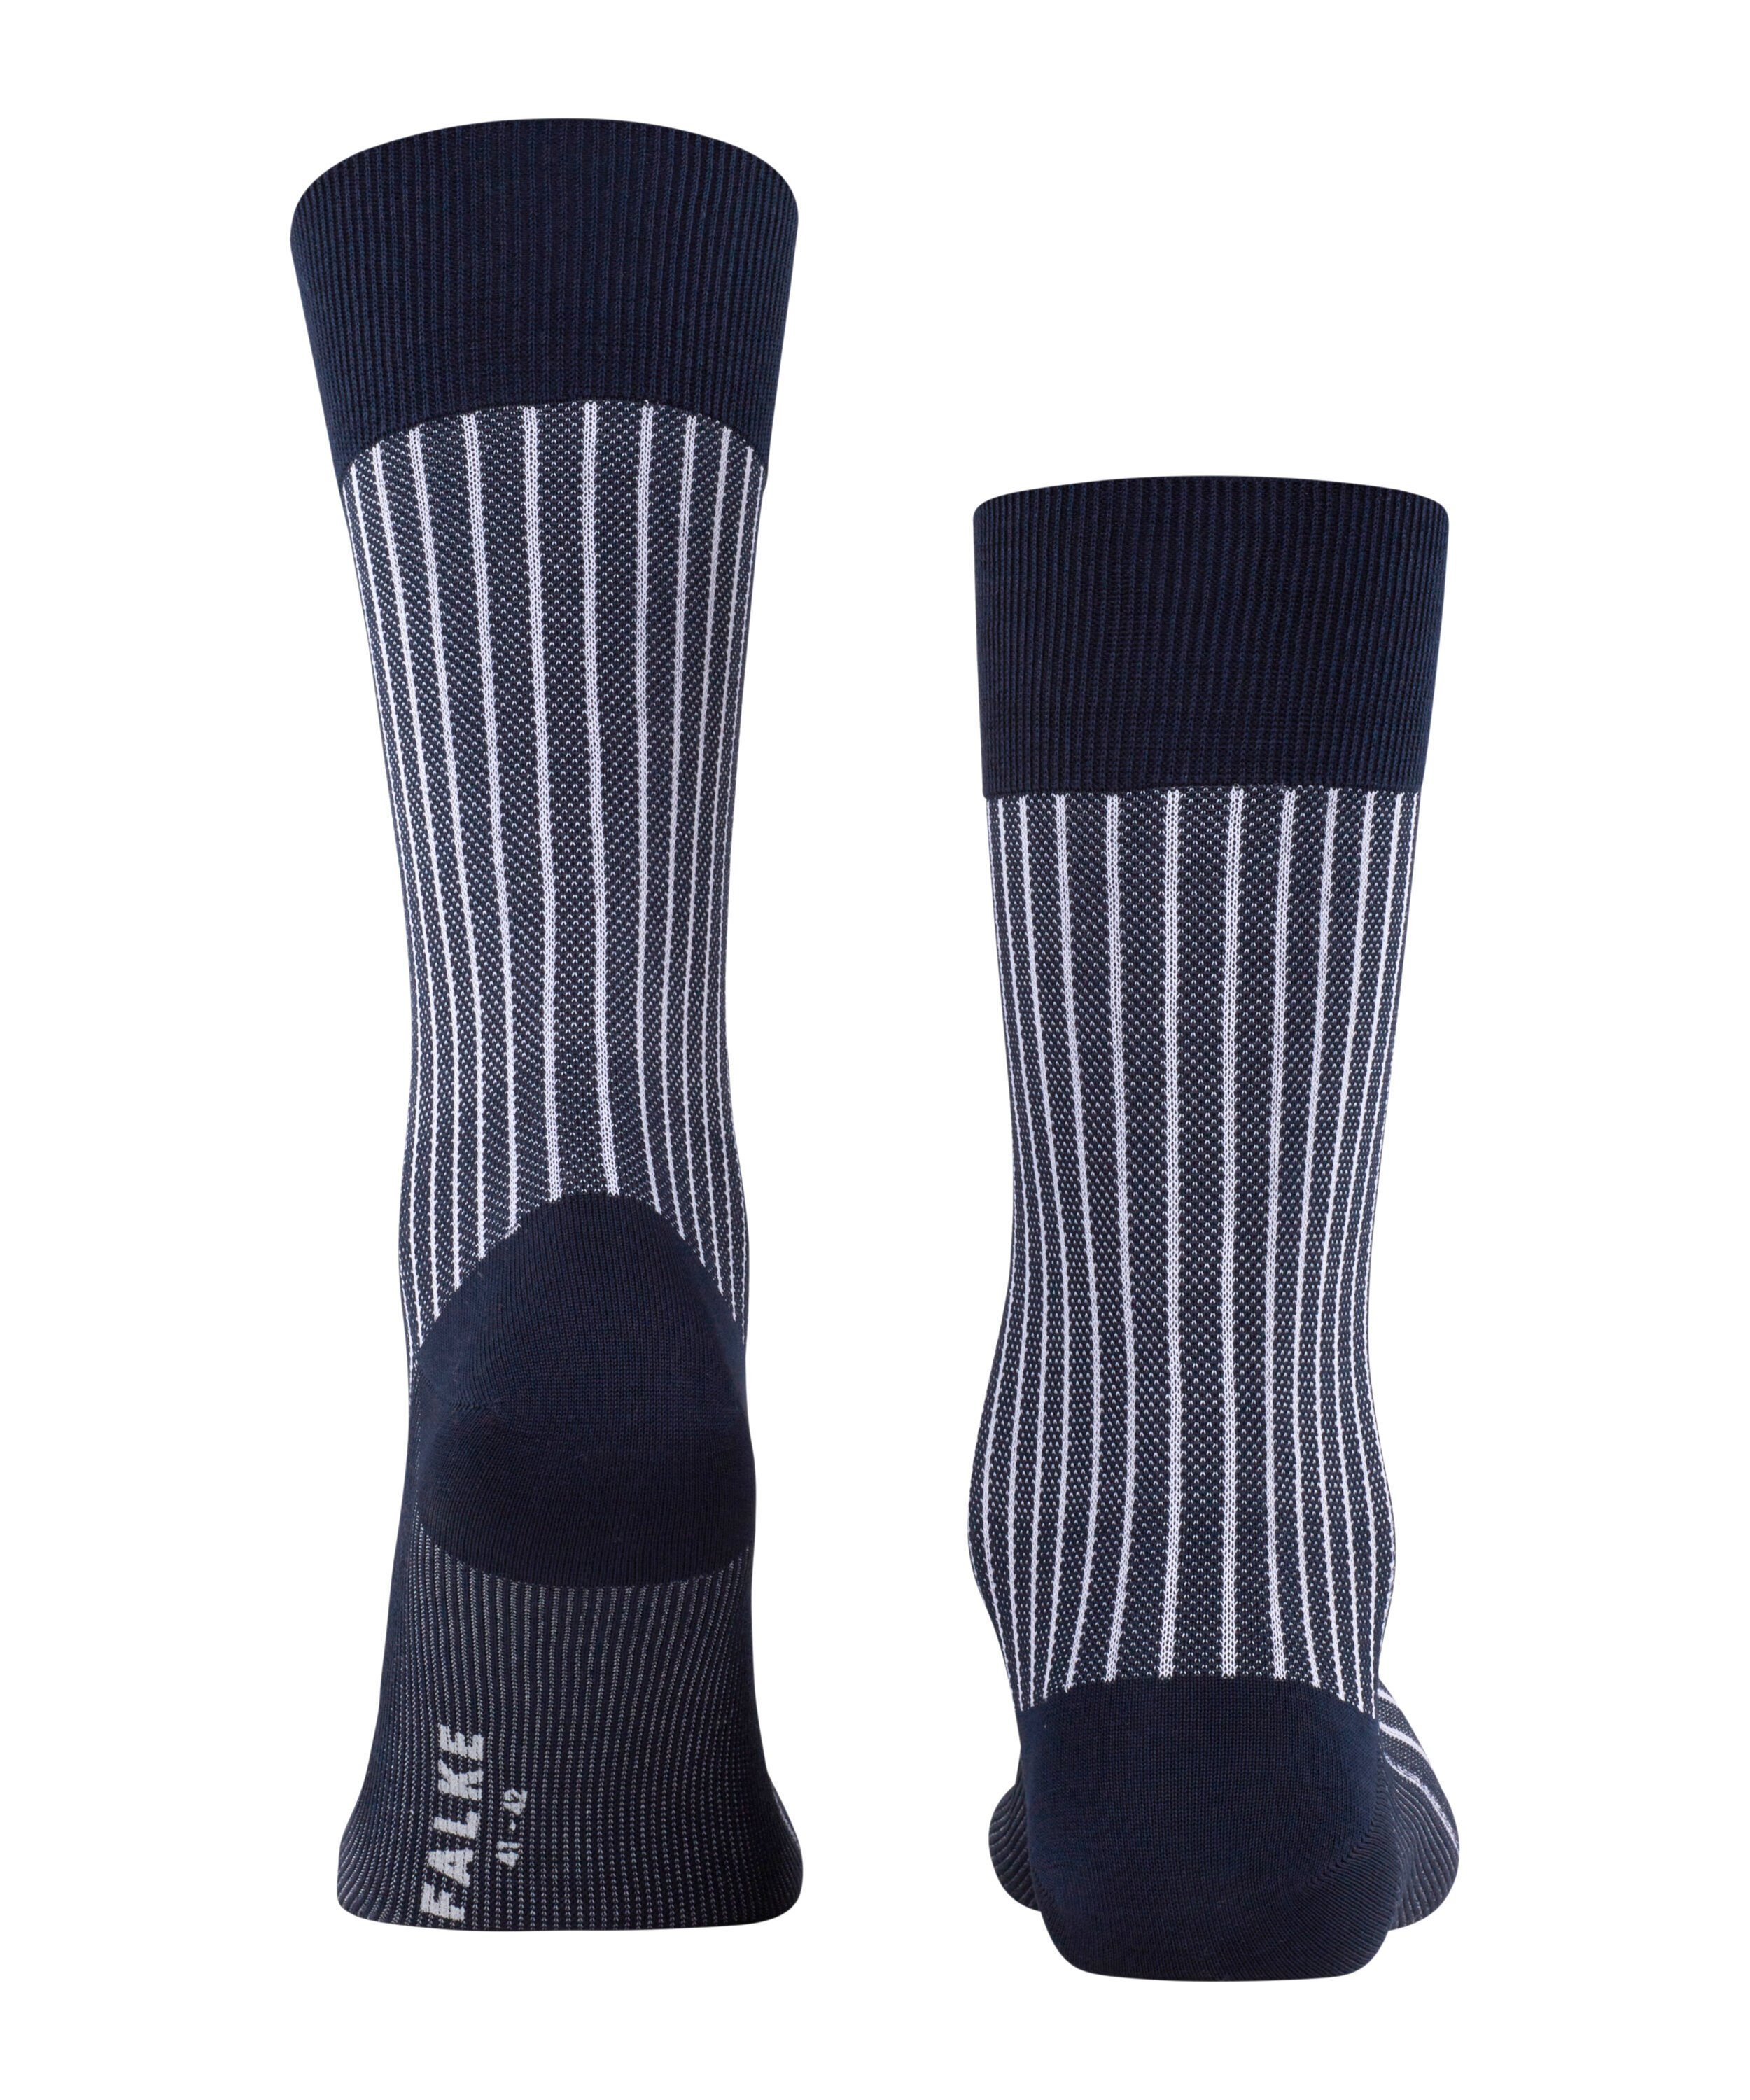 FALKE Socken Oxford Stripe (1-Paar) atlantic (6150)